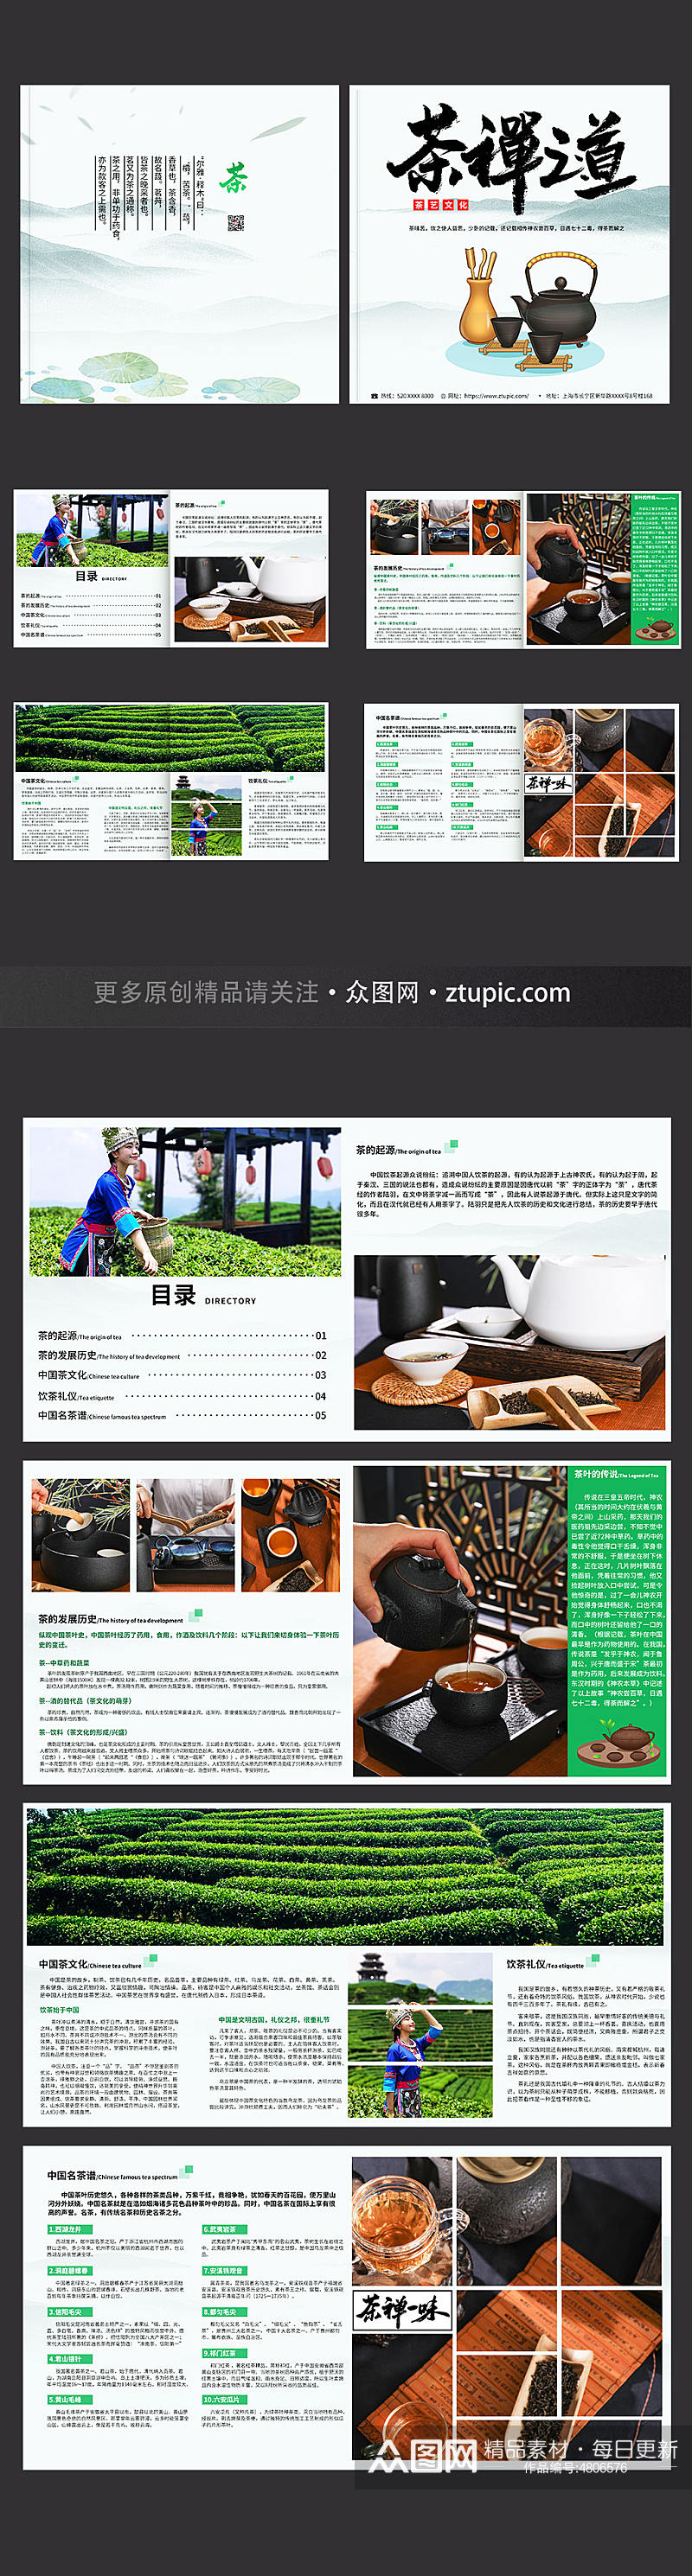 茶禅之道茶叶茶文化茶道宣传册画册素材